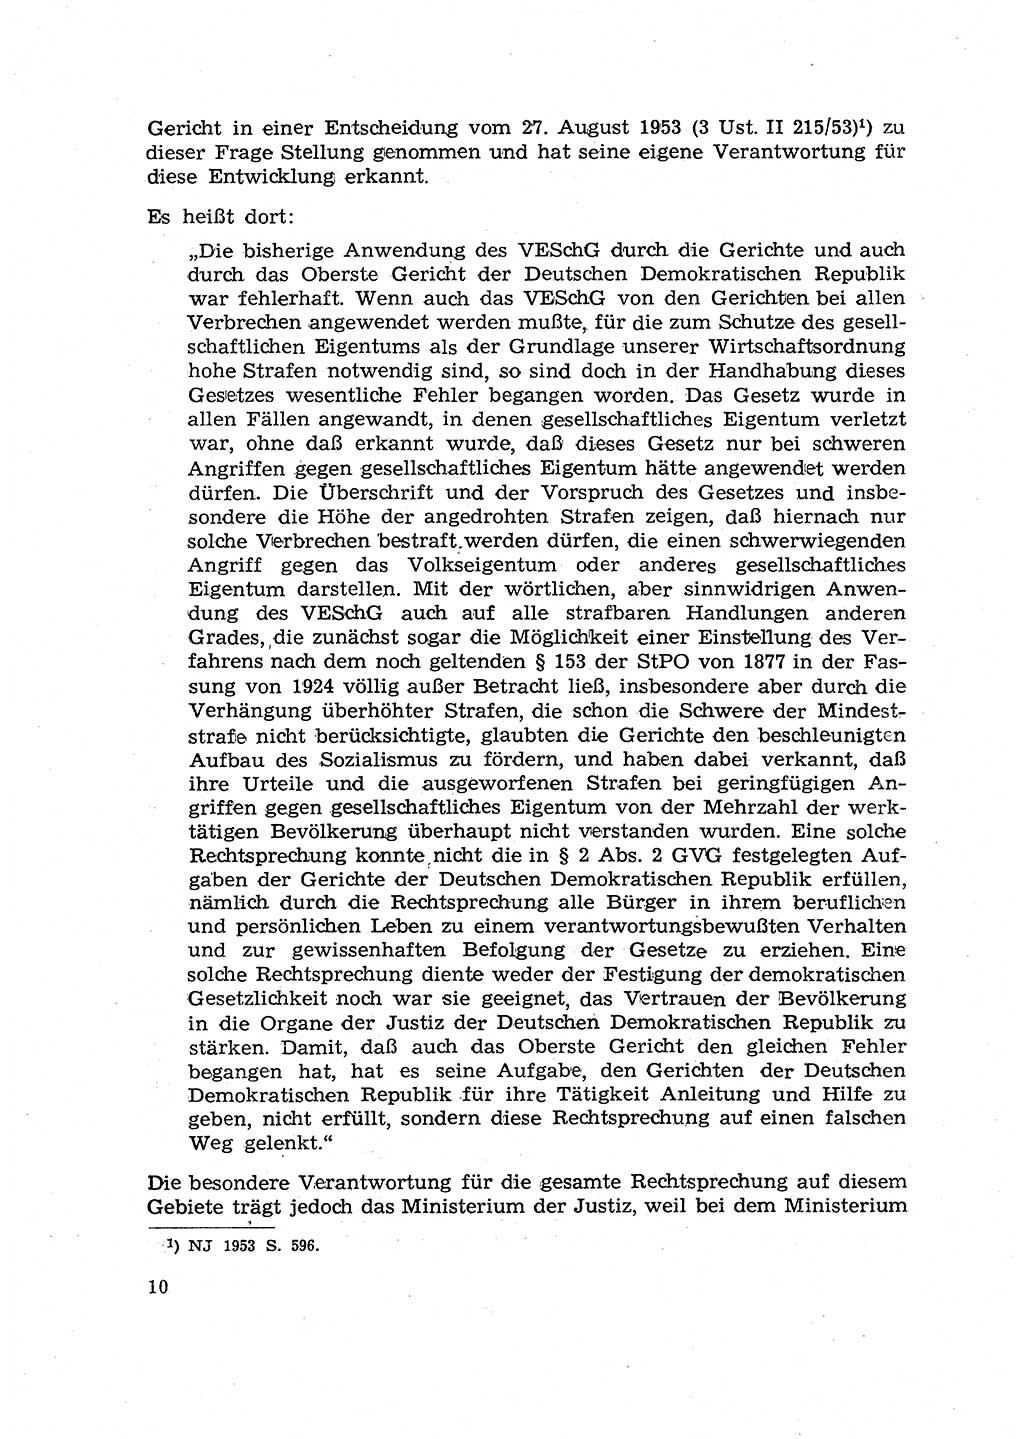 Hauptaufgaben der Justiz [Deutsche Demokratische Republik (DDR)] bei der Durchführung des neuen Kurses 1953, Seite 10 (Hpt.-Aufg. J. DDR 1953, S. 10)